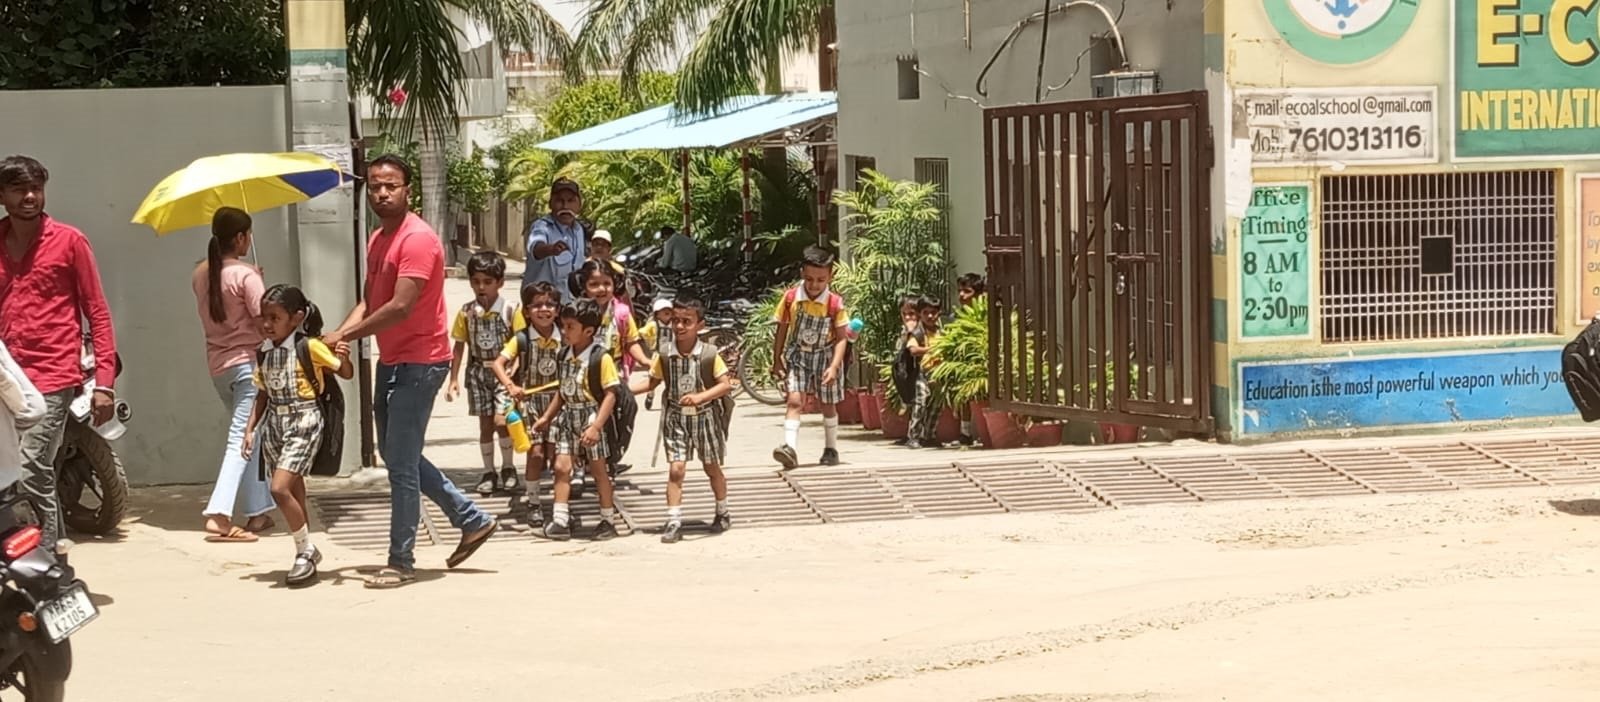 भीषण गर्मी में स्कूल पहुंच रहे नौनिहाल ग्रीष्मकालीन अवकाश देने में निजी विद्यालय कर रहे मनमानी, अविभावकों को सता रही बच्चें के बीमार होने की चिंता